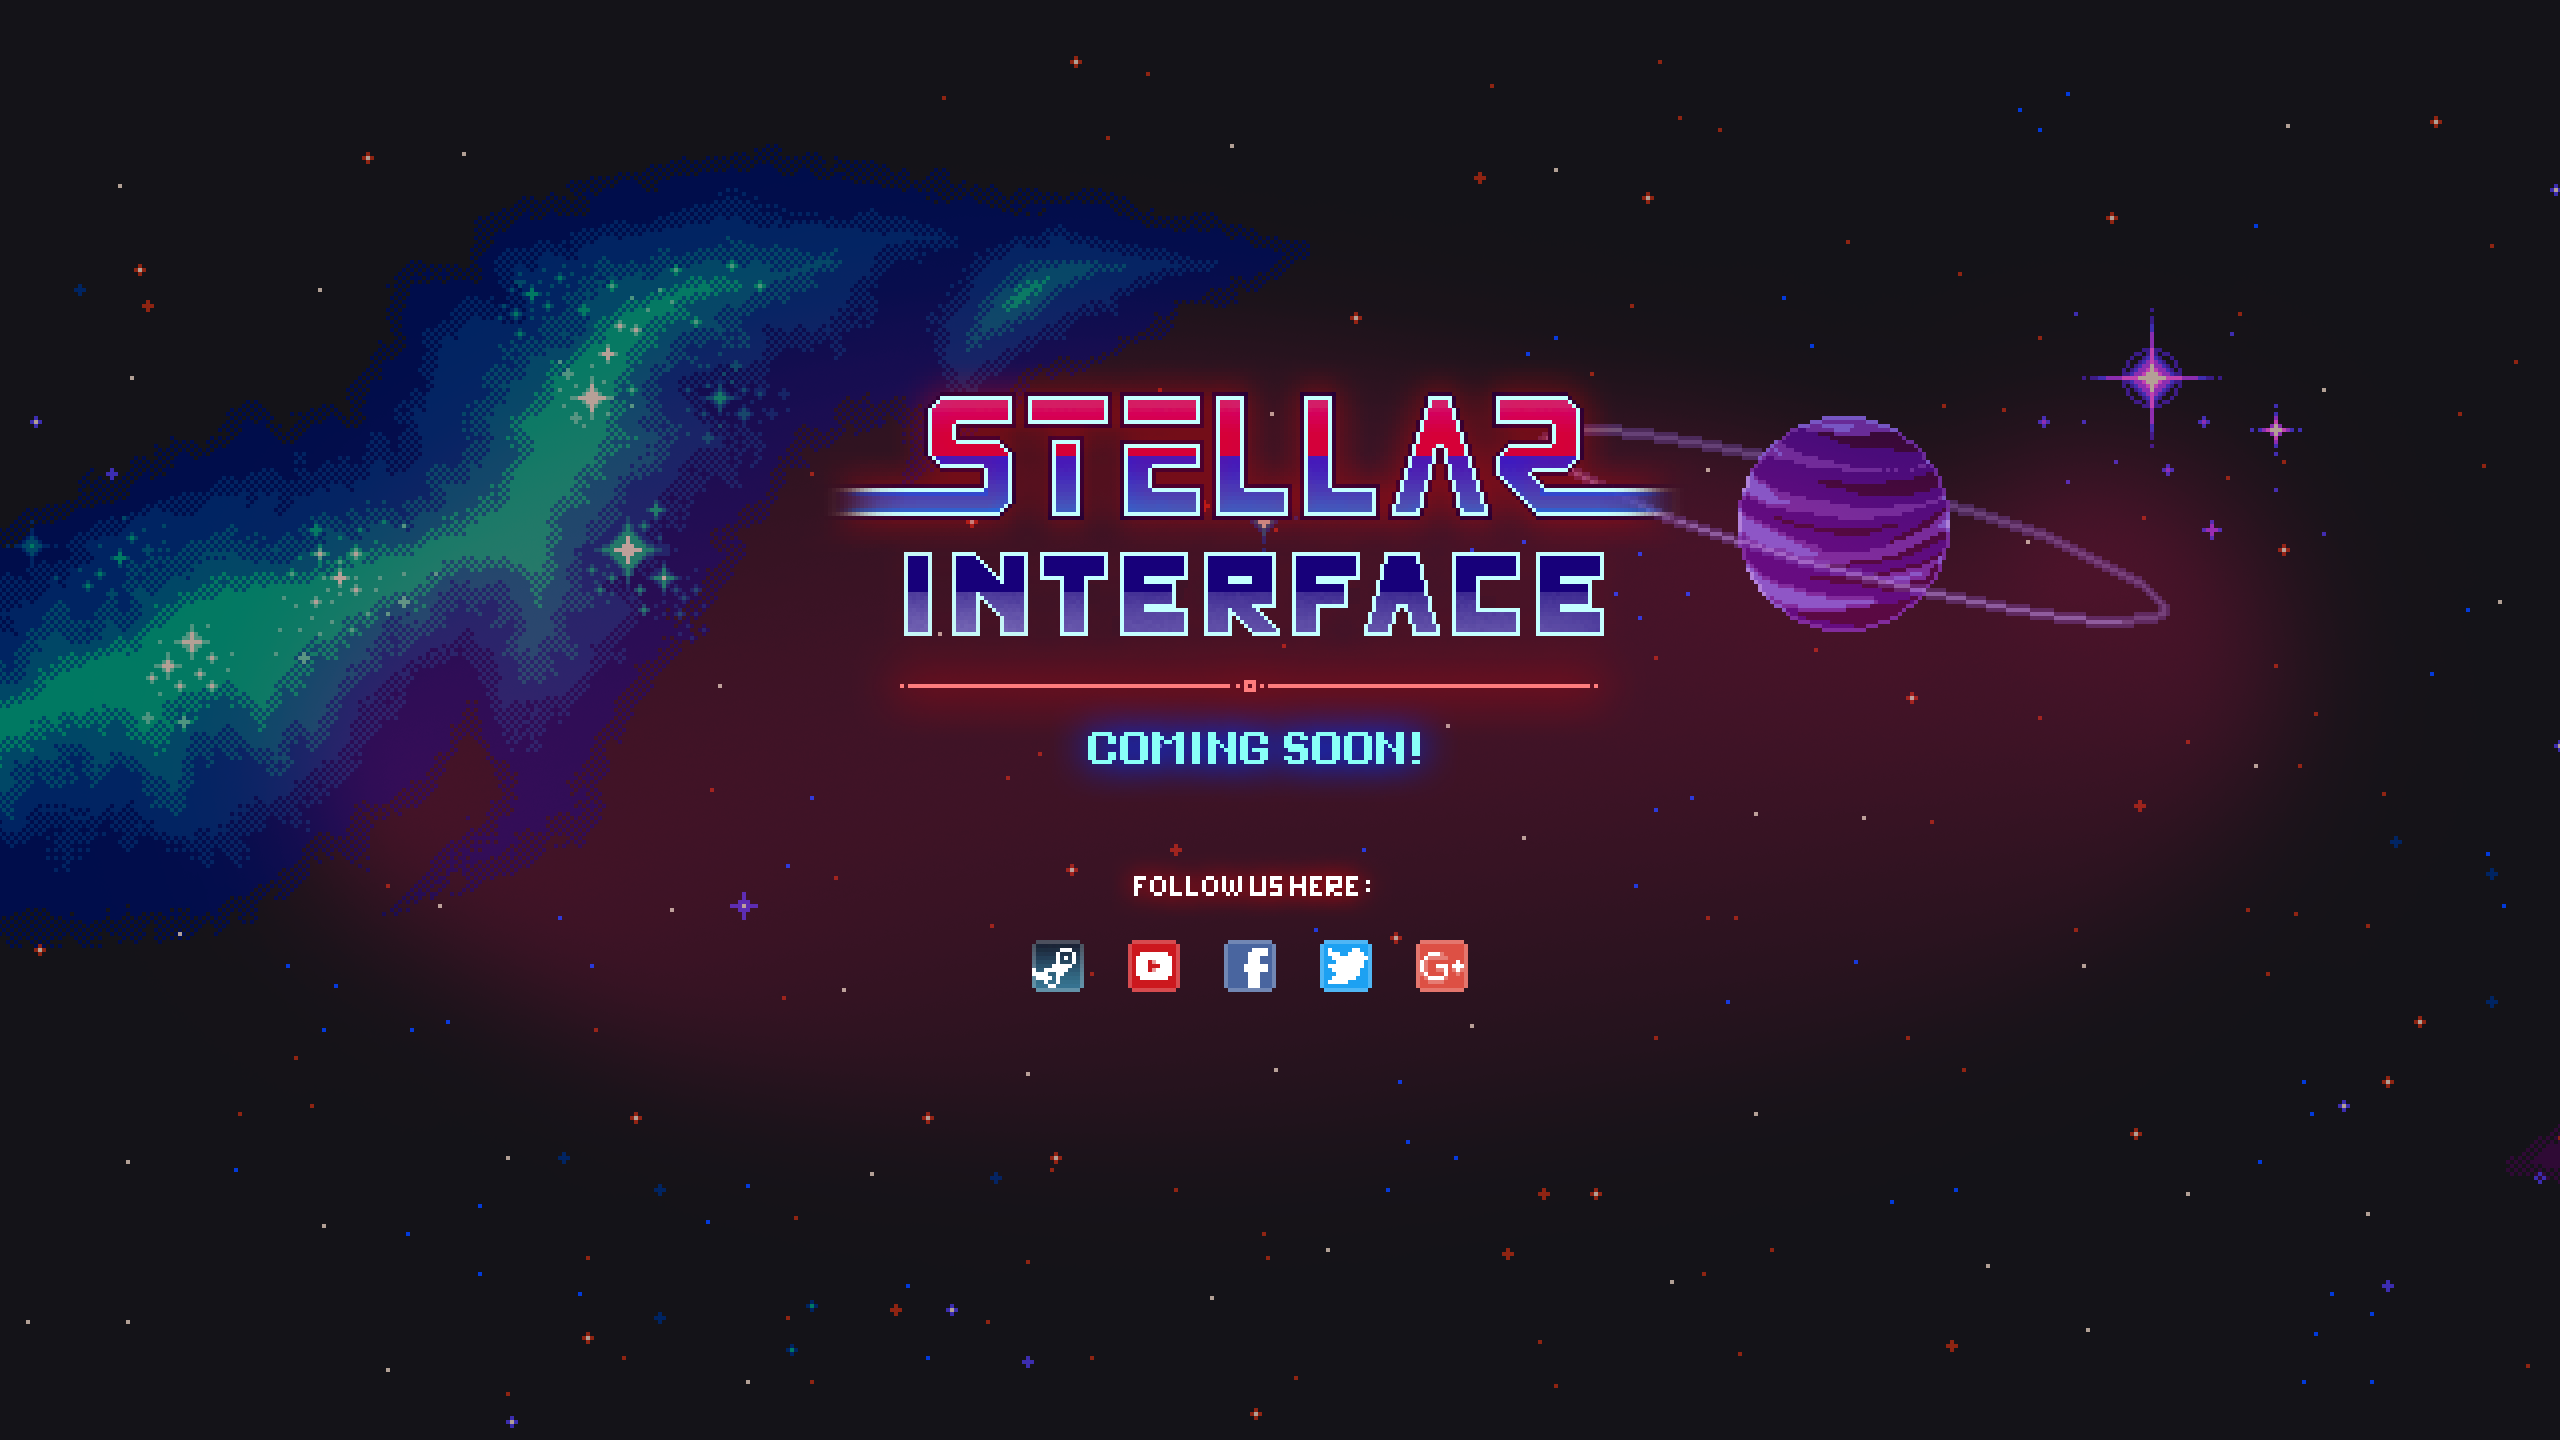 Stellar Interface for mac download